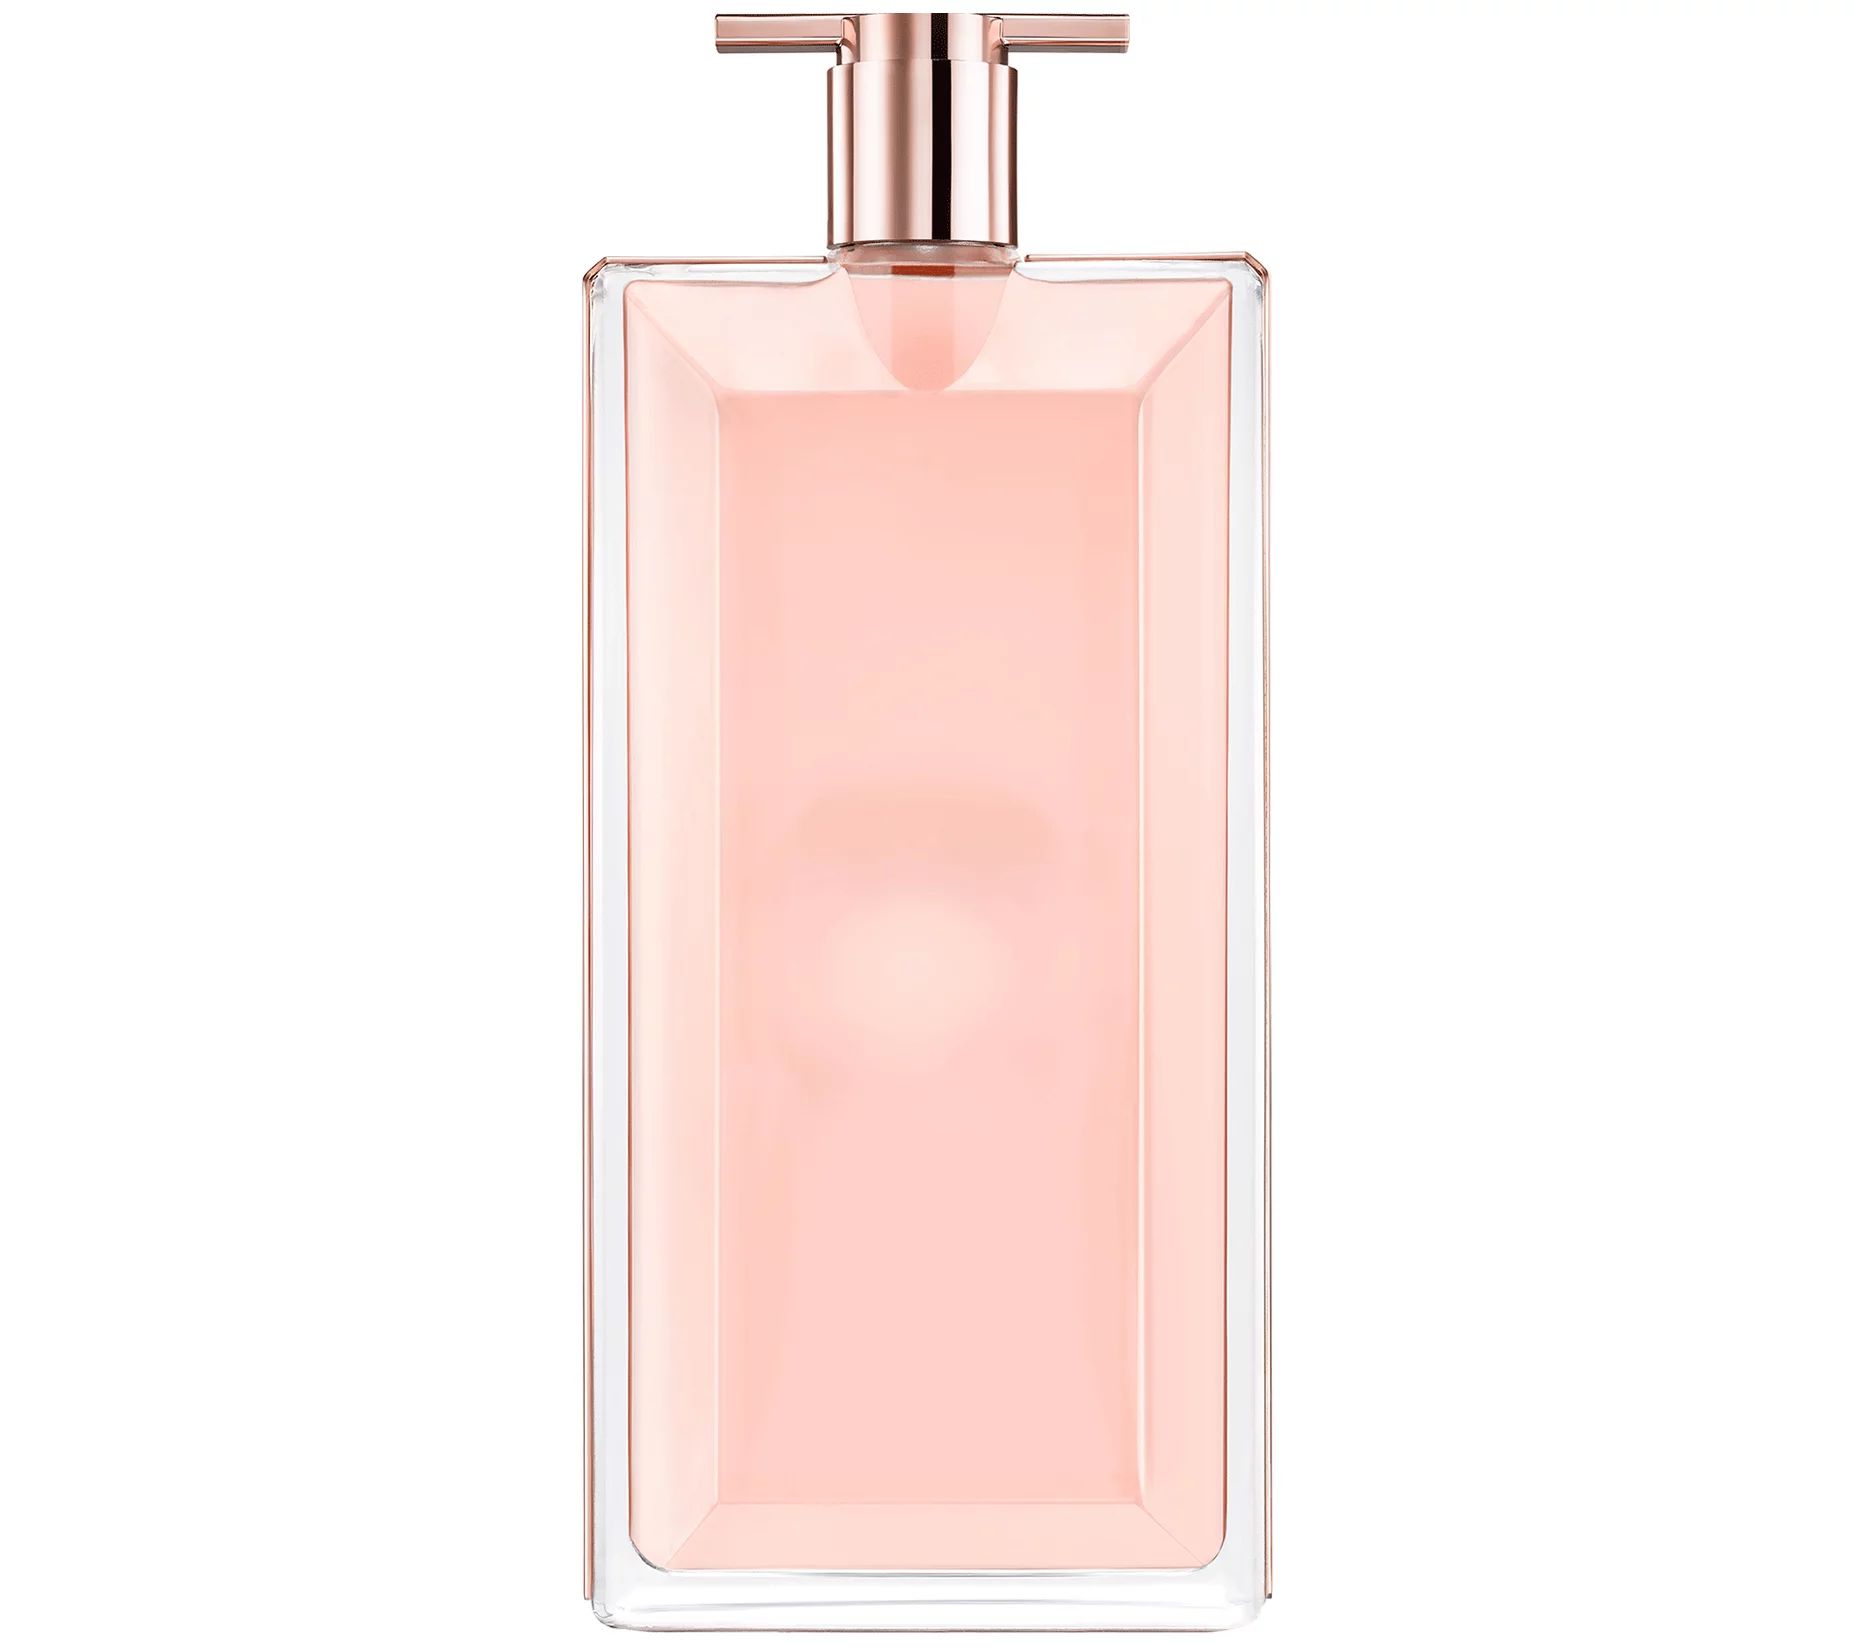 Lancome Idole Eau de Parfum, 1.7-fl oz | QVC